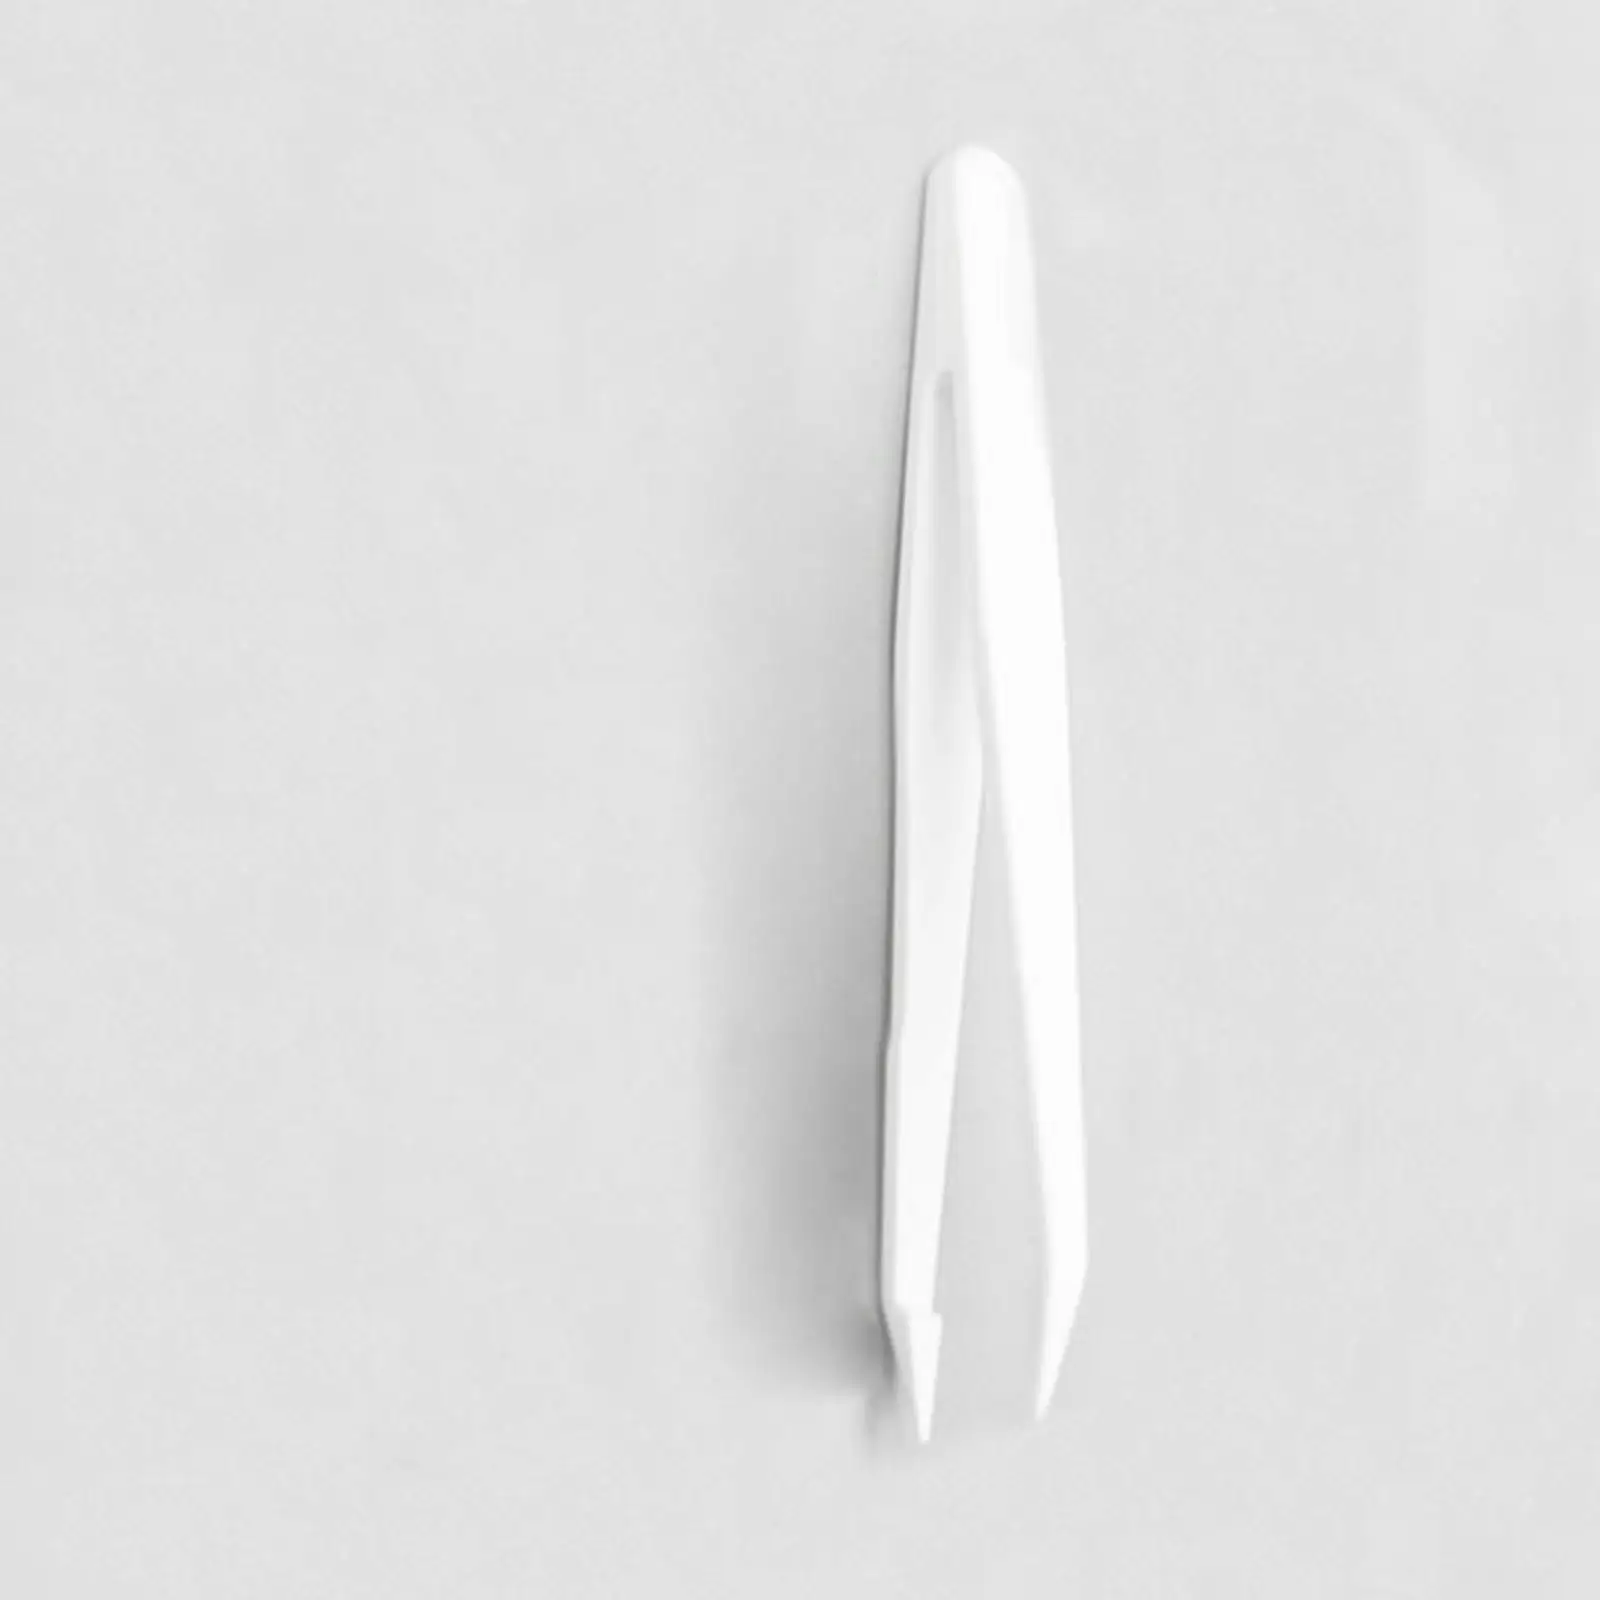 2 ADET 12 cm Uzunluk Beyaz Künt uçlu Forseps Western Blot WB Cımbız